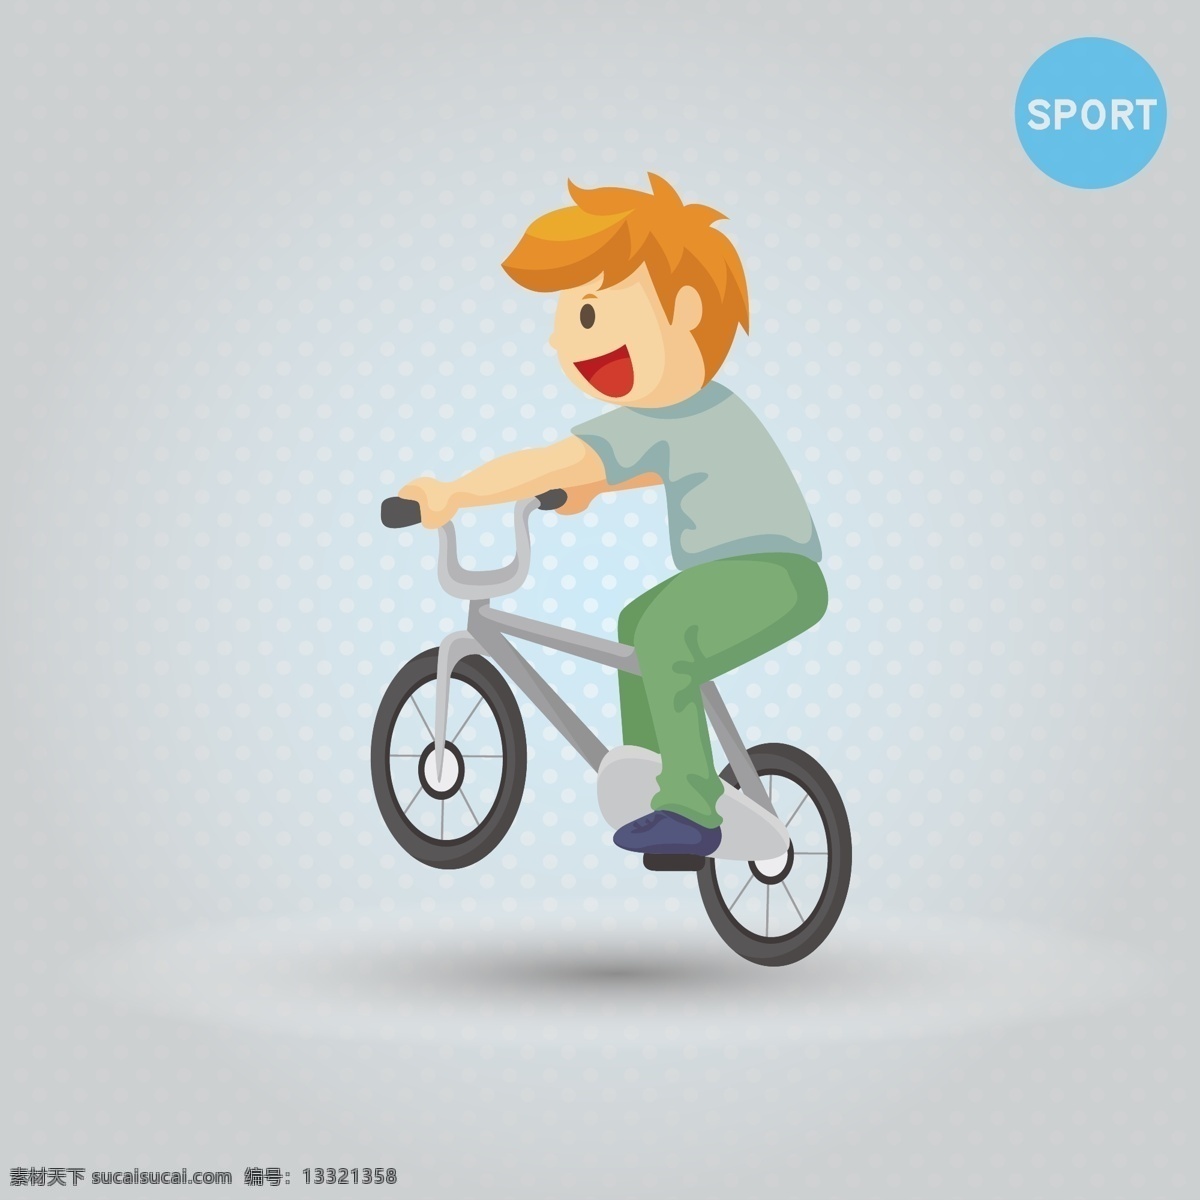 单车 户外运动 健康 骑单车 日常生活 矢量人物 矢量运动 运动 运动人物矢量 踩 男孩 矢量 模板下载 踩单车的男孩 运动矢量 sport 运动男生 骑单车的男孩 矢量图